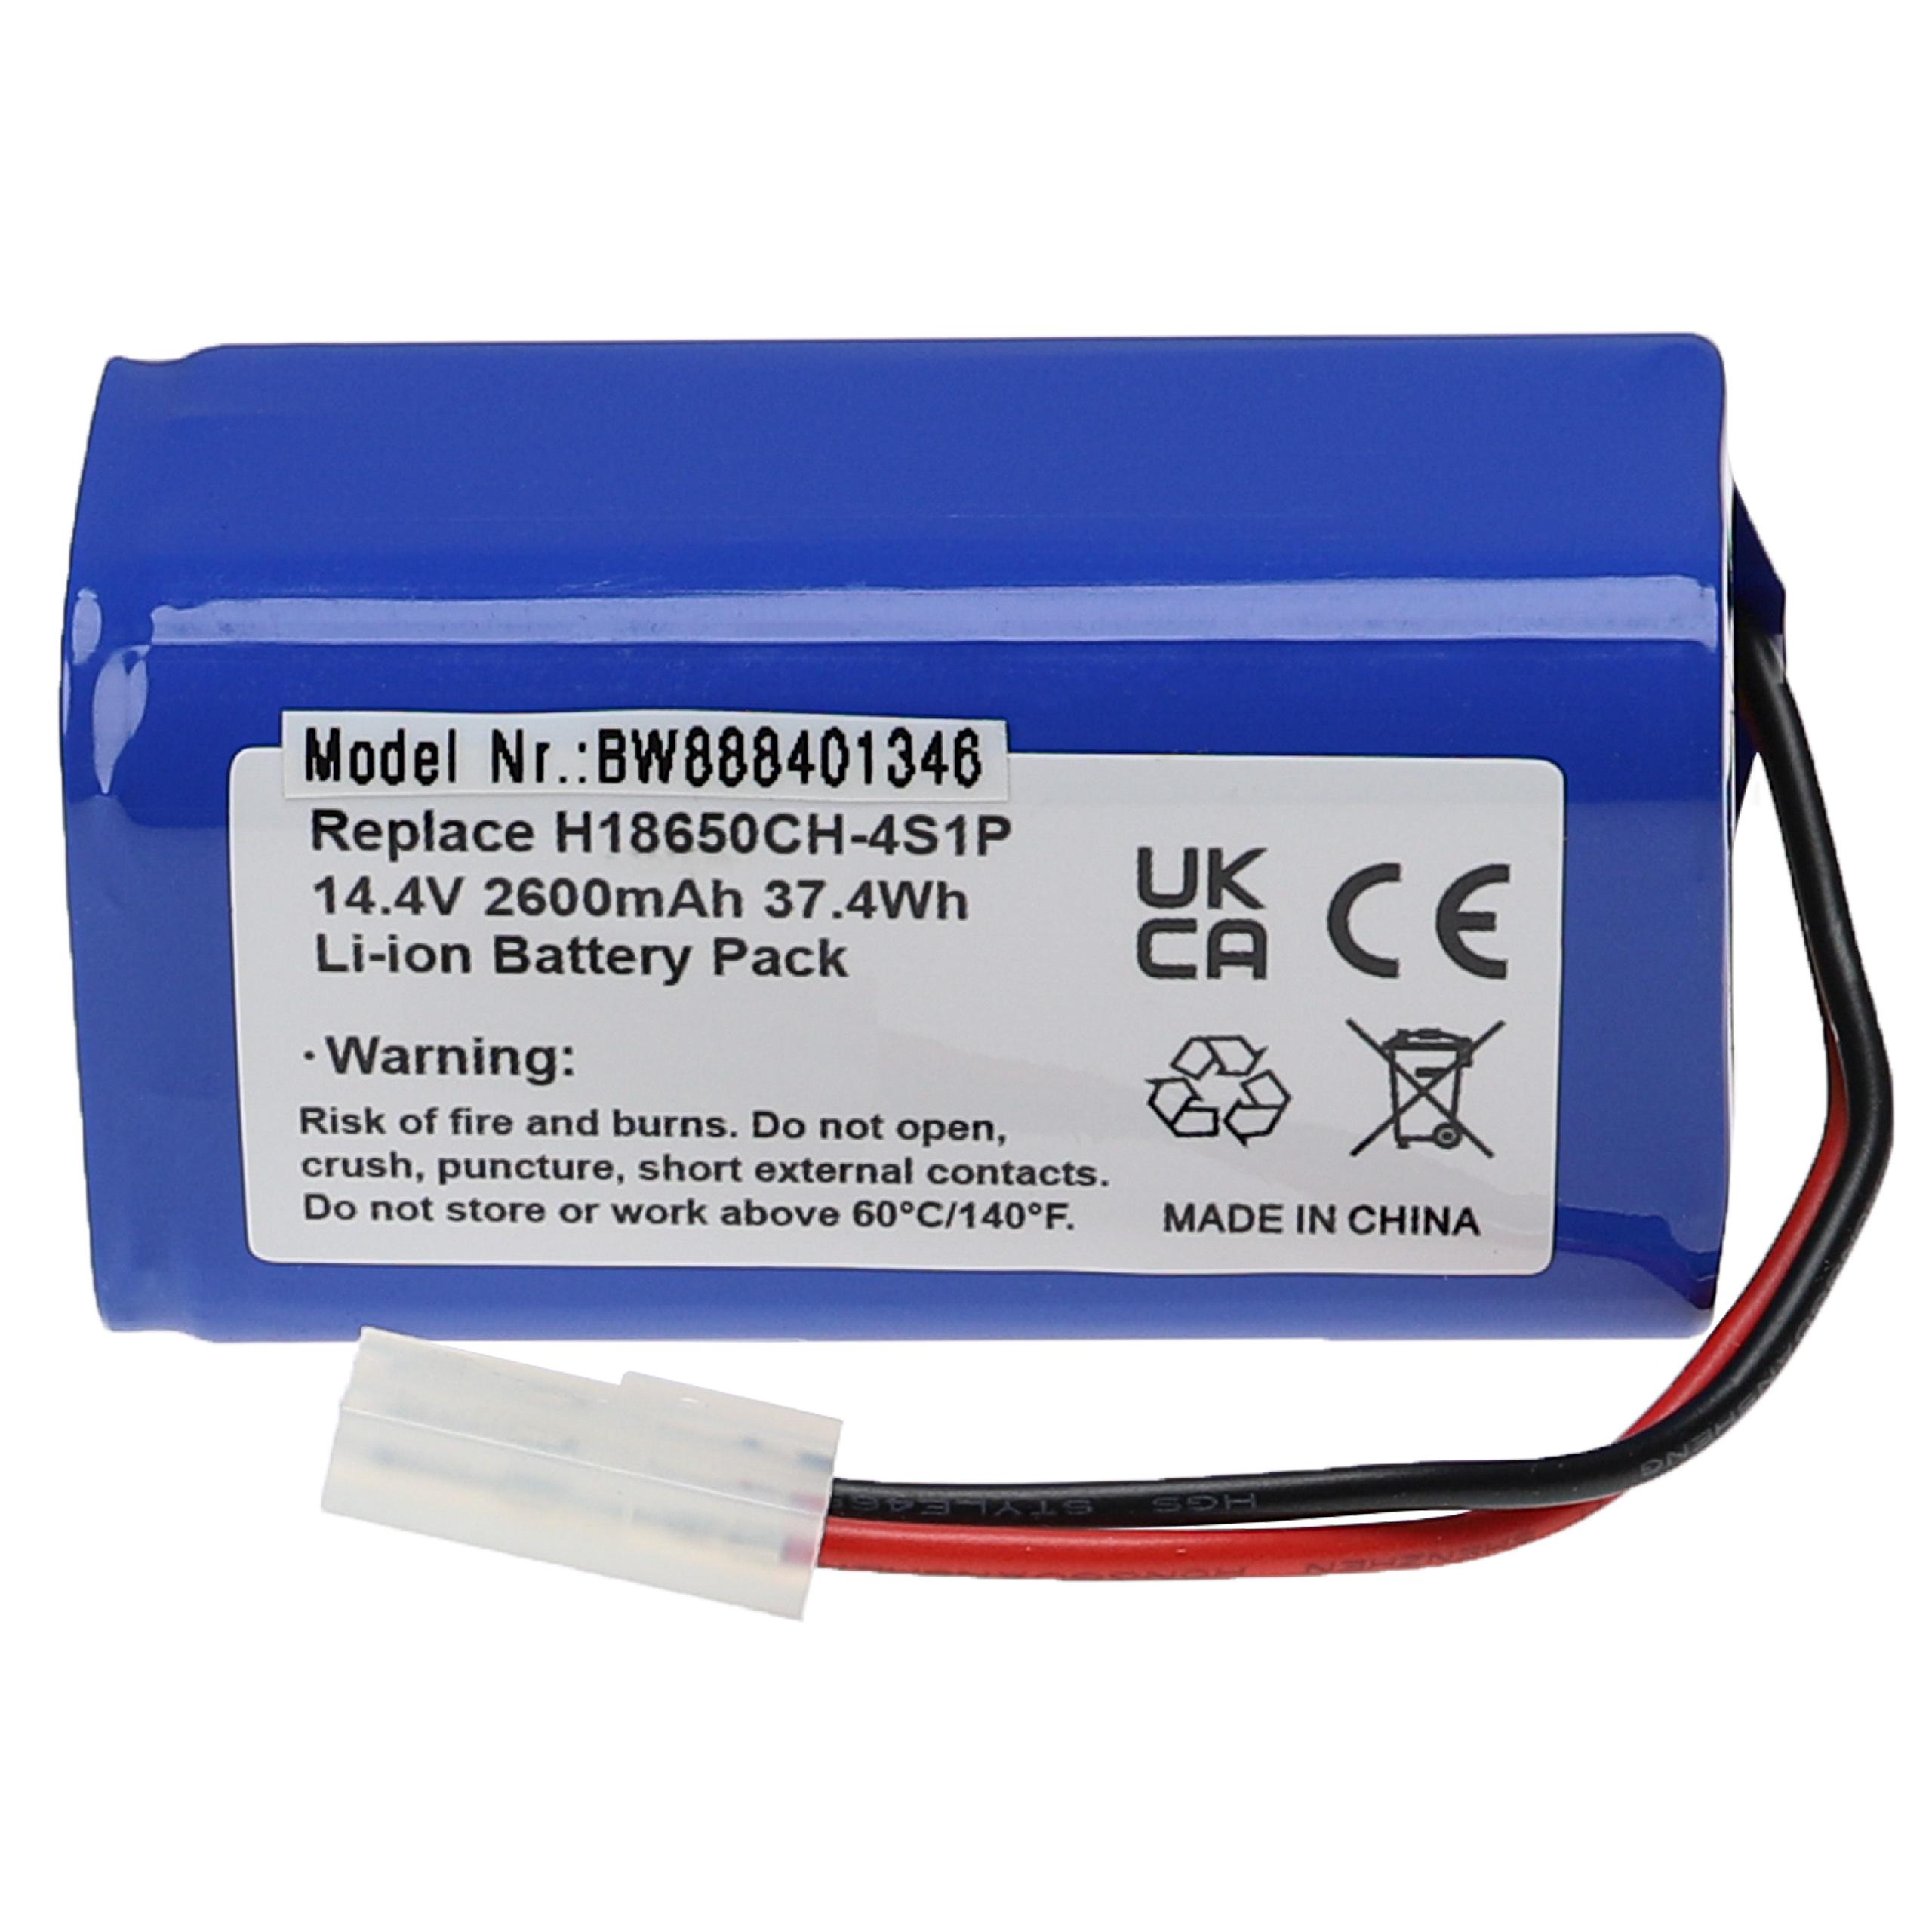 Batterie remplace Xiaomi H18650CH-4S1P pour robot aspirateur - 2600mAh 14,4V Li-ion